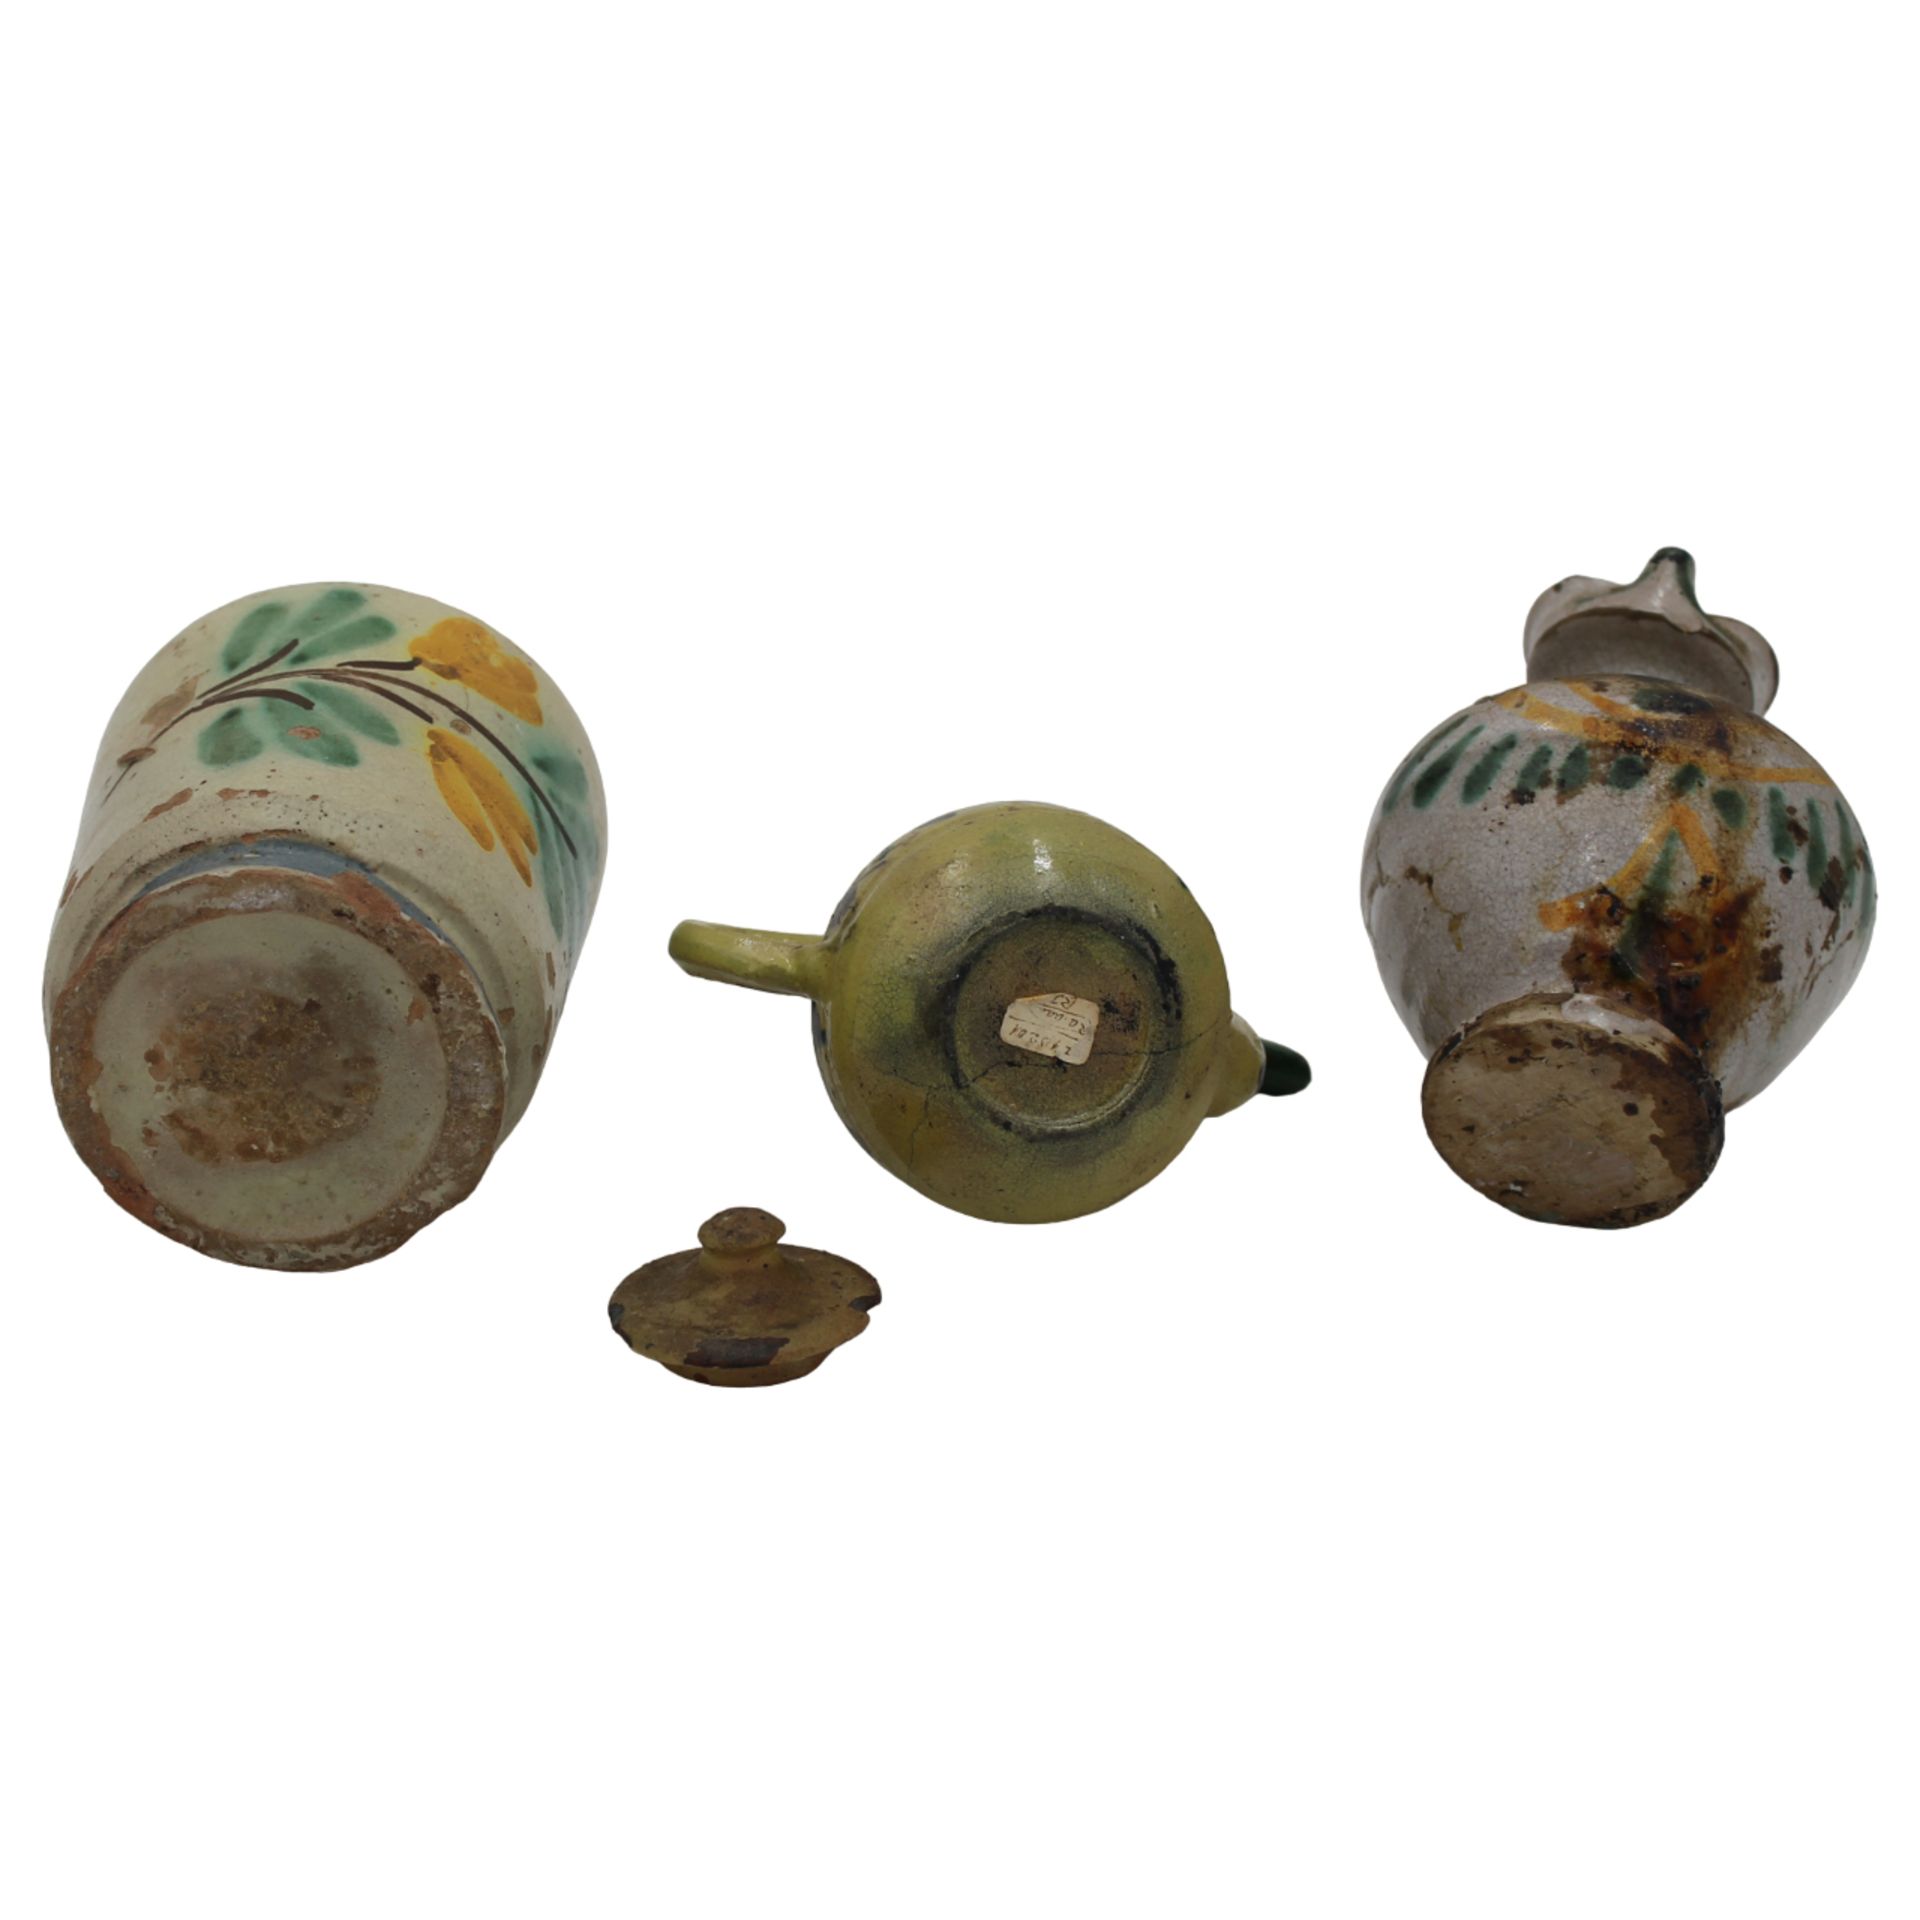 Un rocchetto, una lucerna e una piccola brocca - A rocchetto, a lamp and a small jug - Image 2 of 2